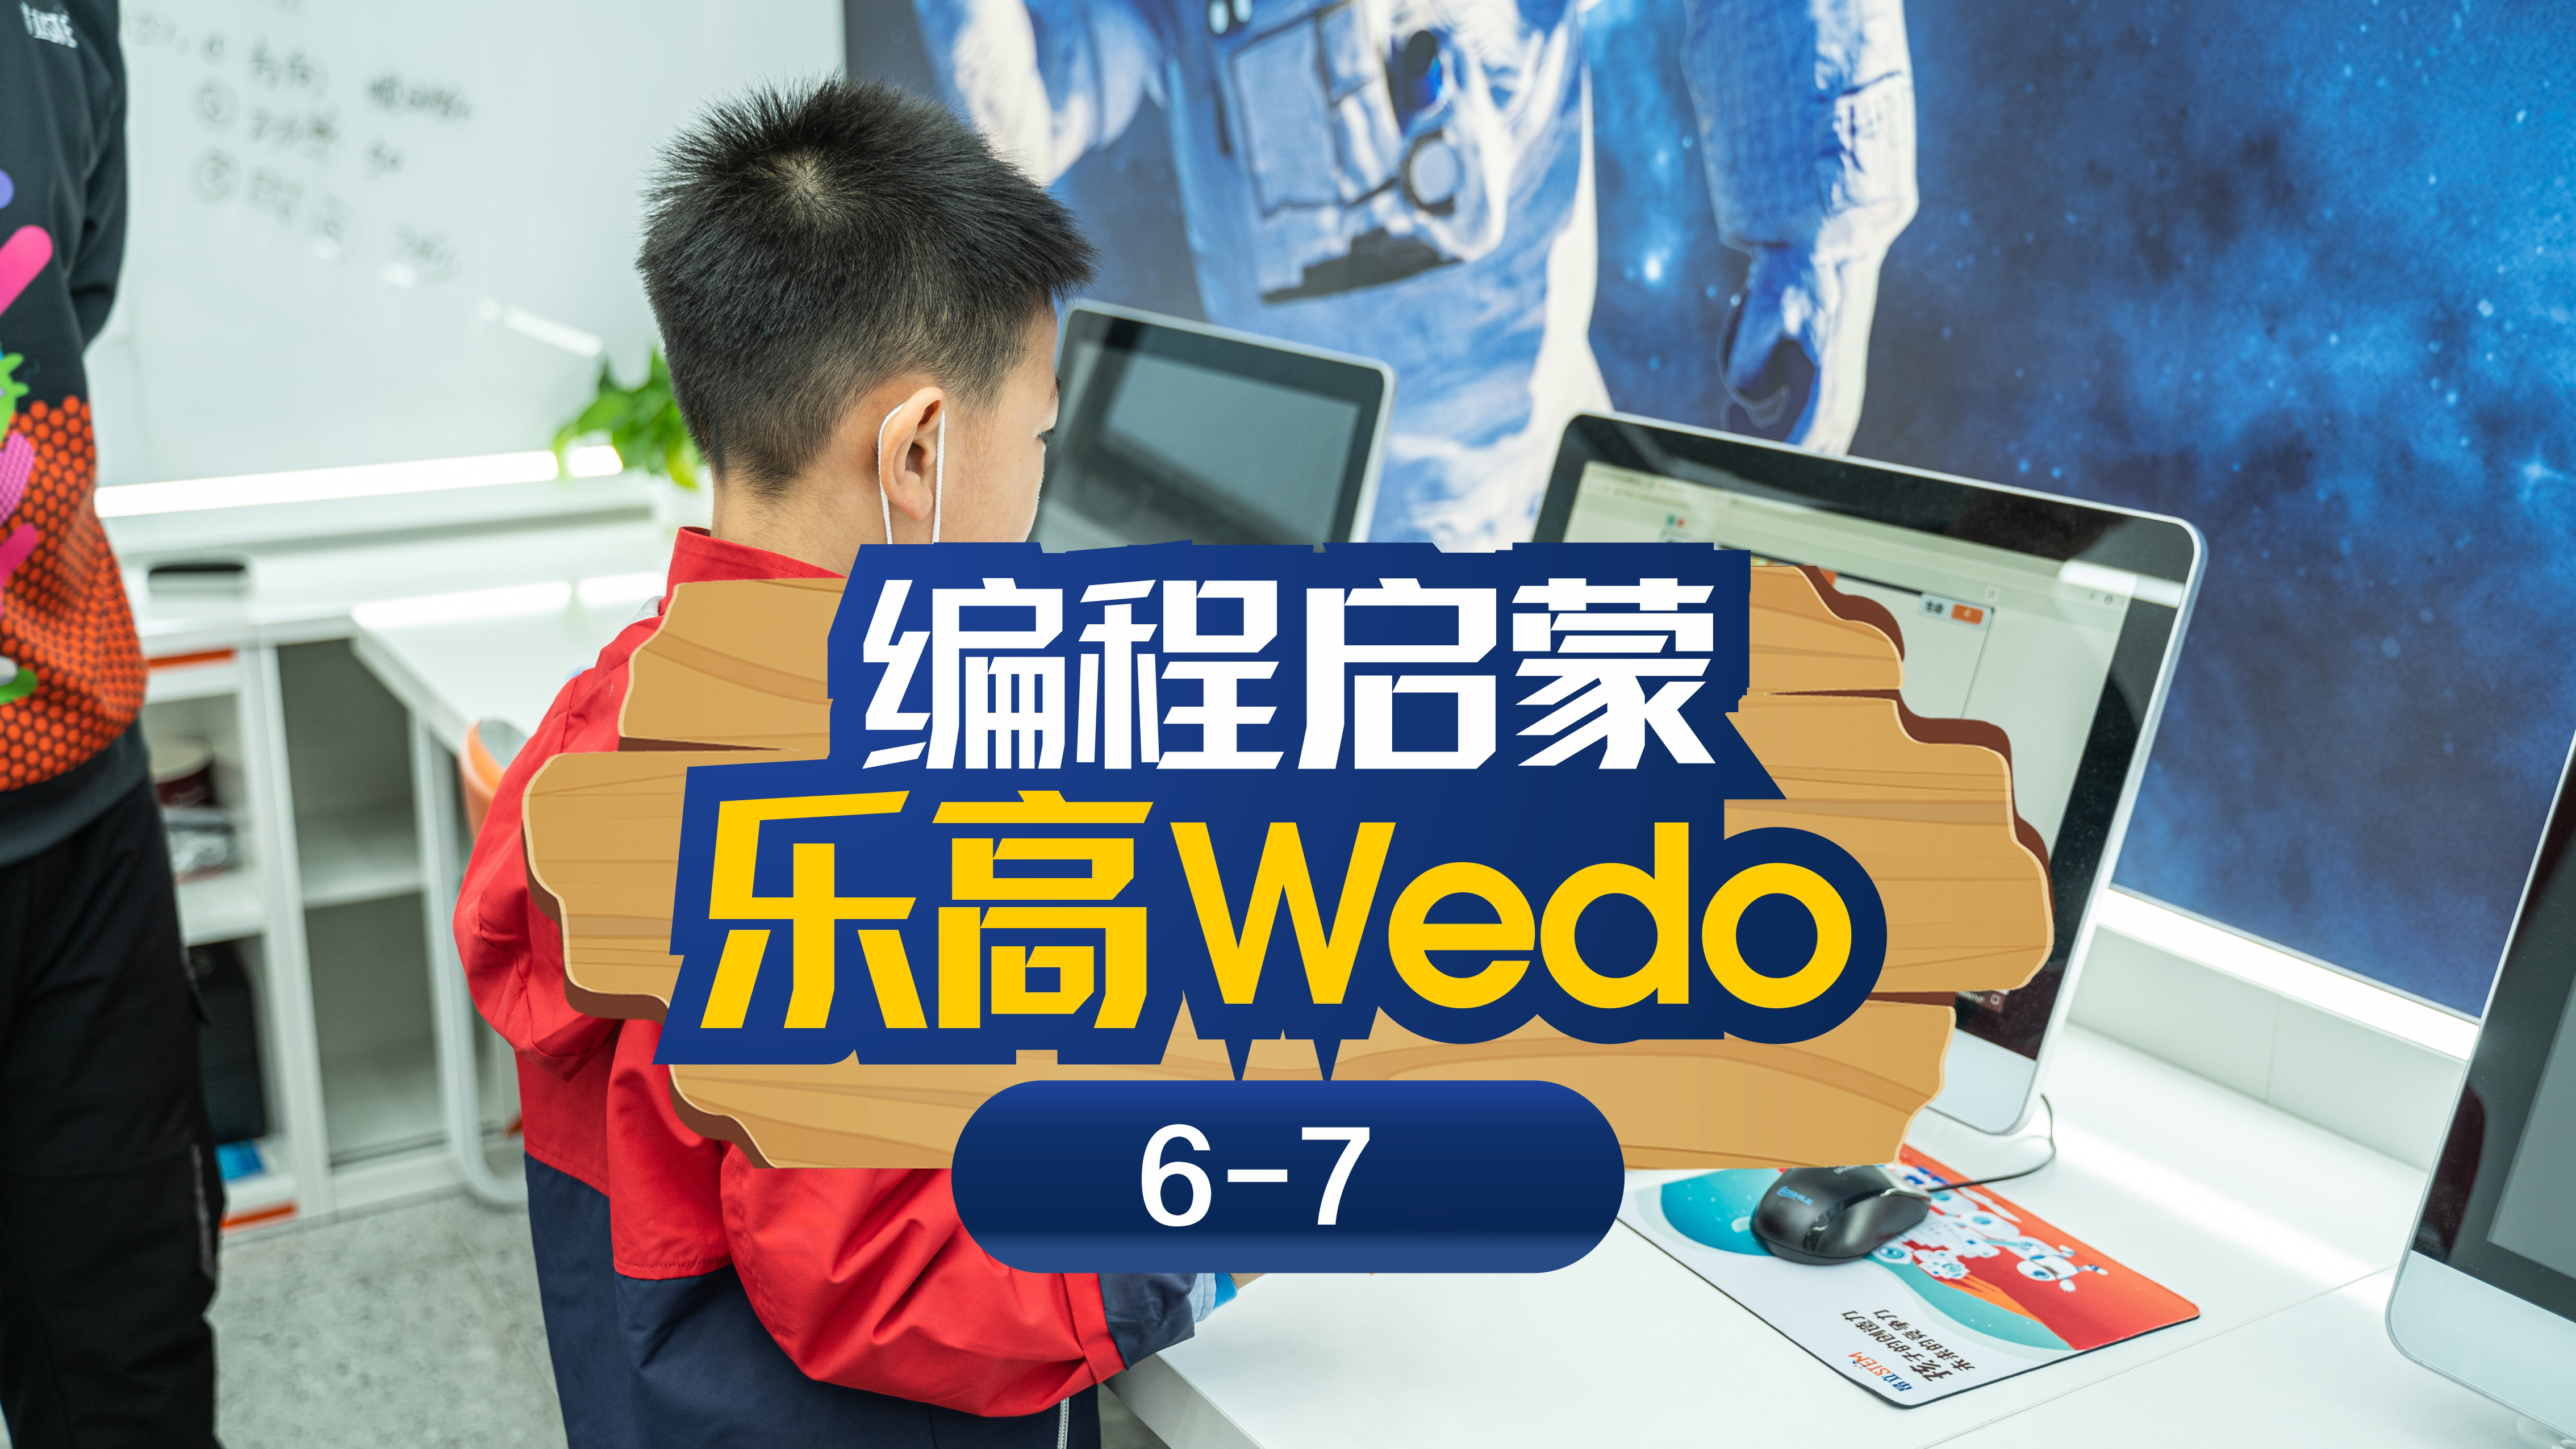 上海斯坦星球科创编程编程启蒙乐高Wedo课程图片